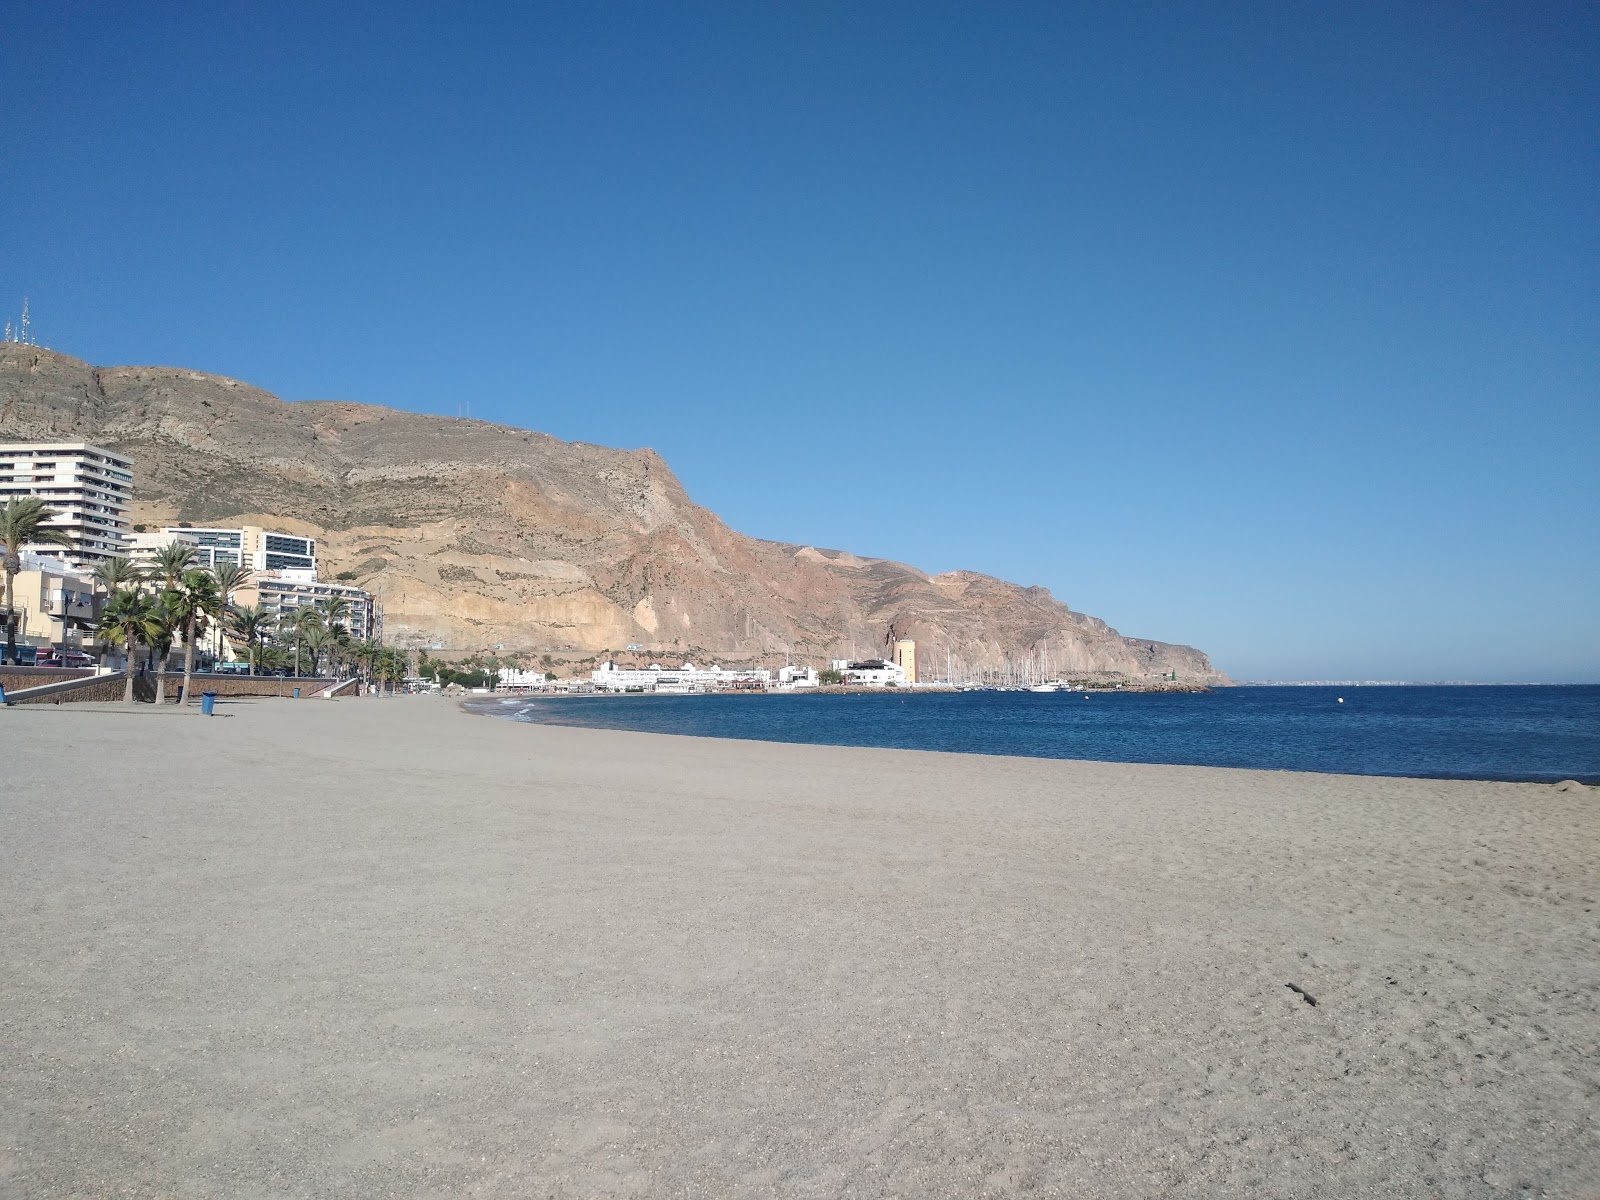 Foto af Playa Aguadulce - populært sted blandt afslapningskendere